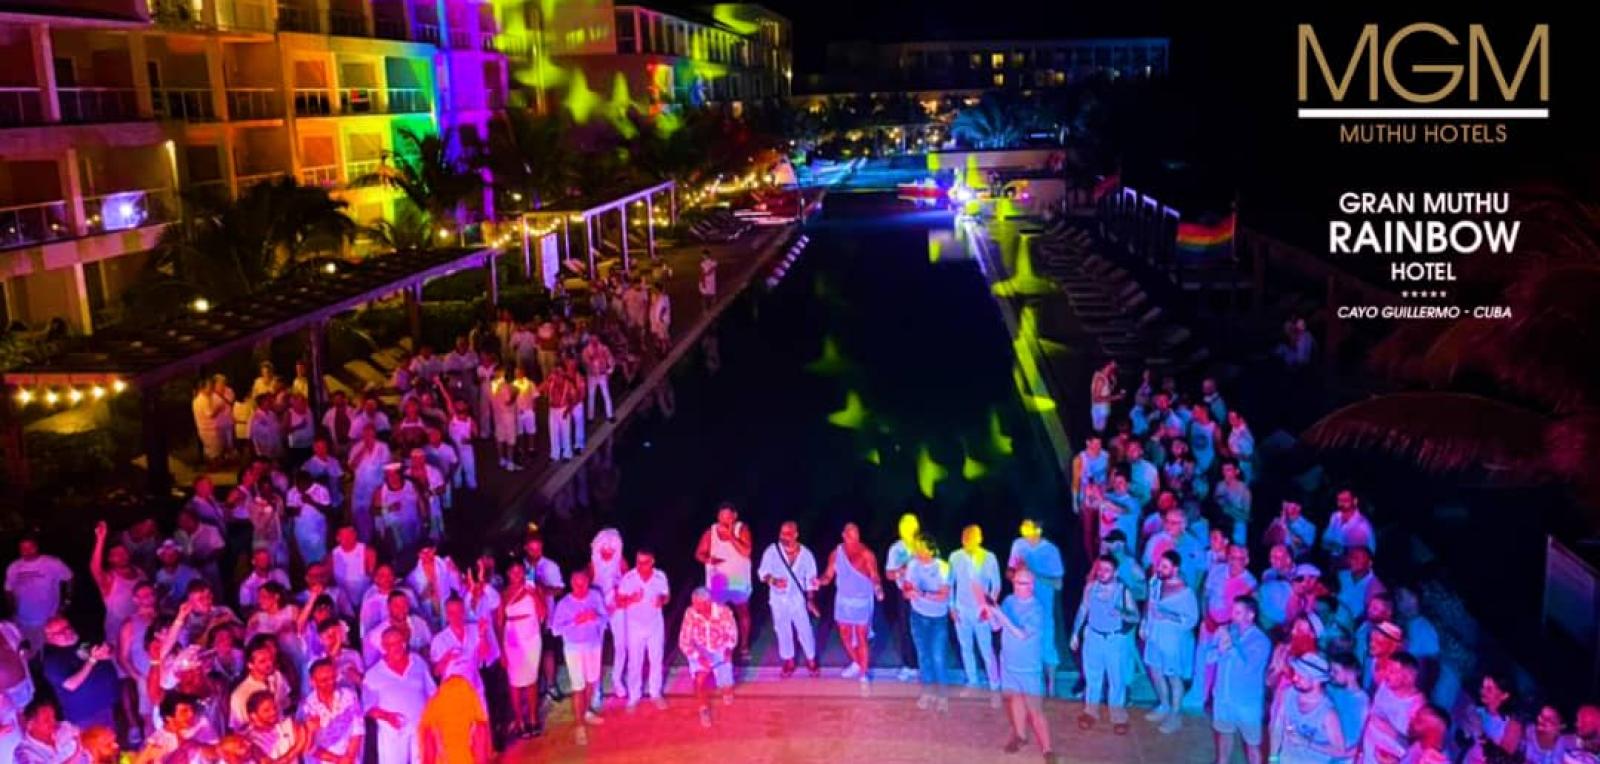 Celebra la diversidad hotel Gran Muthu Rainbow de Cayo Guillermo